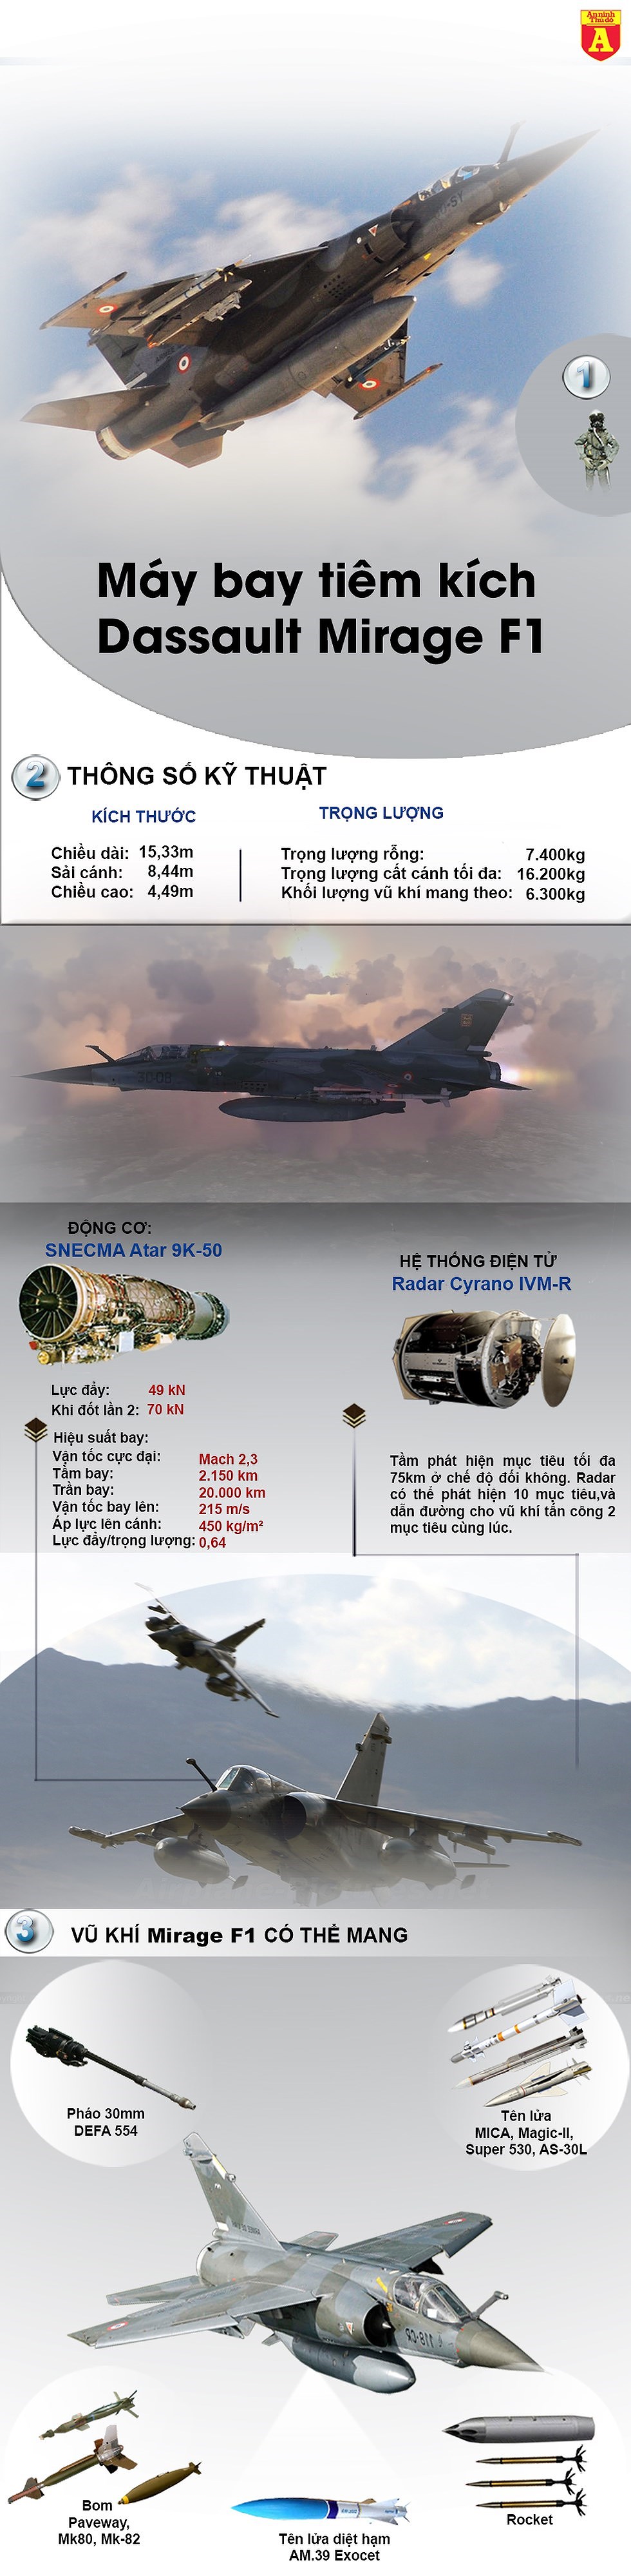 [Infographics] Bất ngờ khi công ty tư nhân Mỹ sở hữu sức mạnh bằng không quân một quốc gia - Ảnh 1